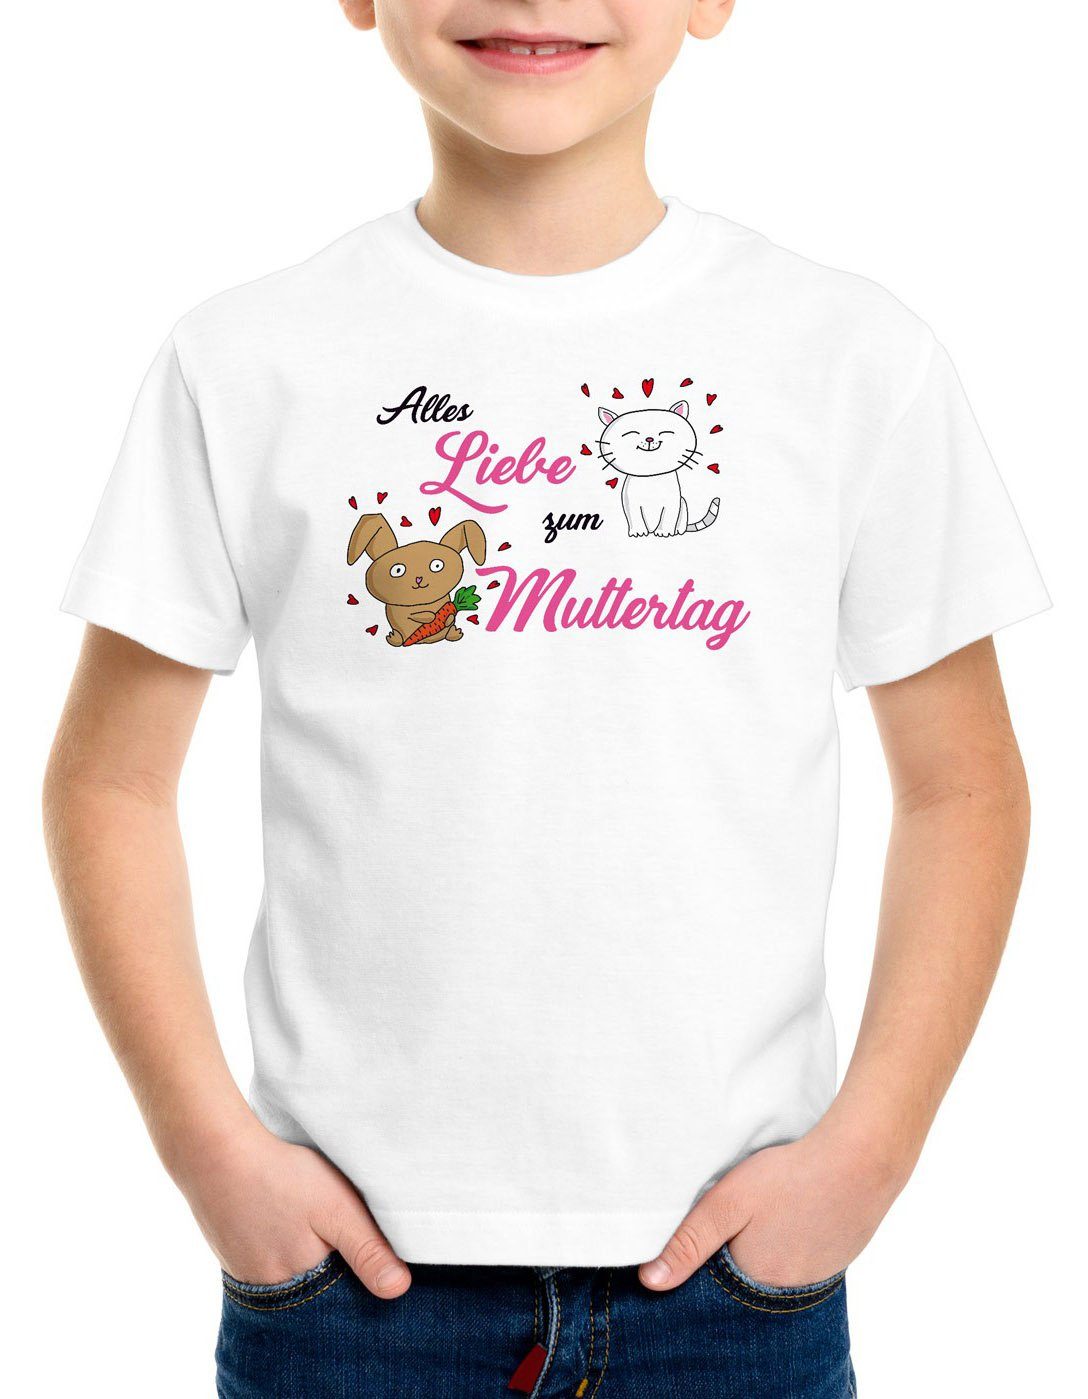 style3 Print-Shirt Kinder i love T-Shirt Katze Mutter Muttertag Liebe zum weiß Alles Geschenk Mum Mama